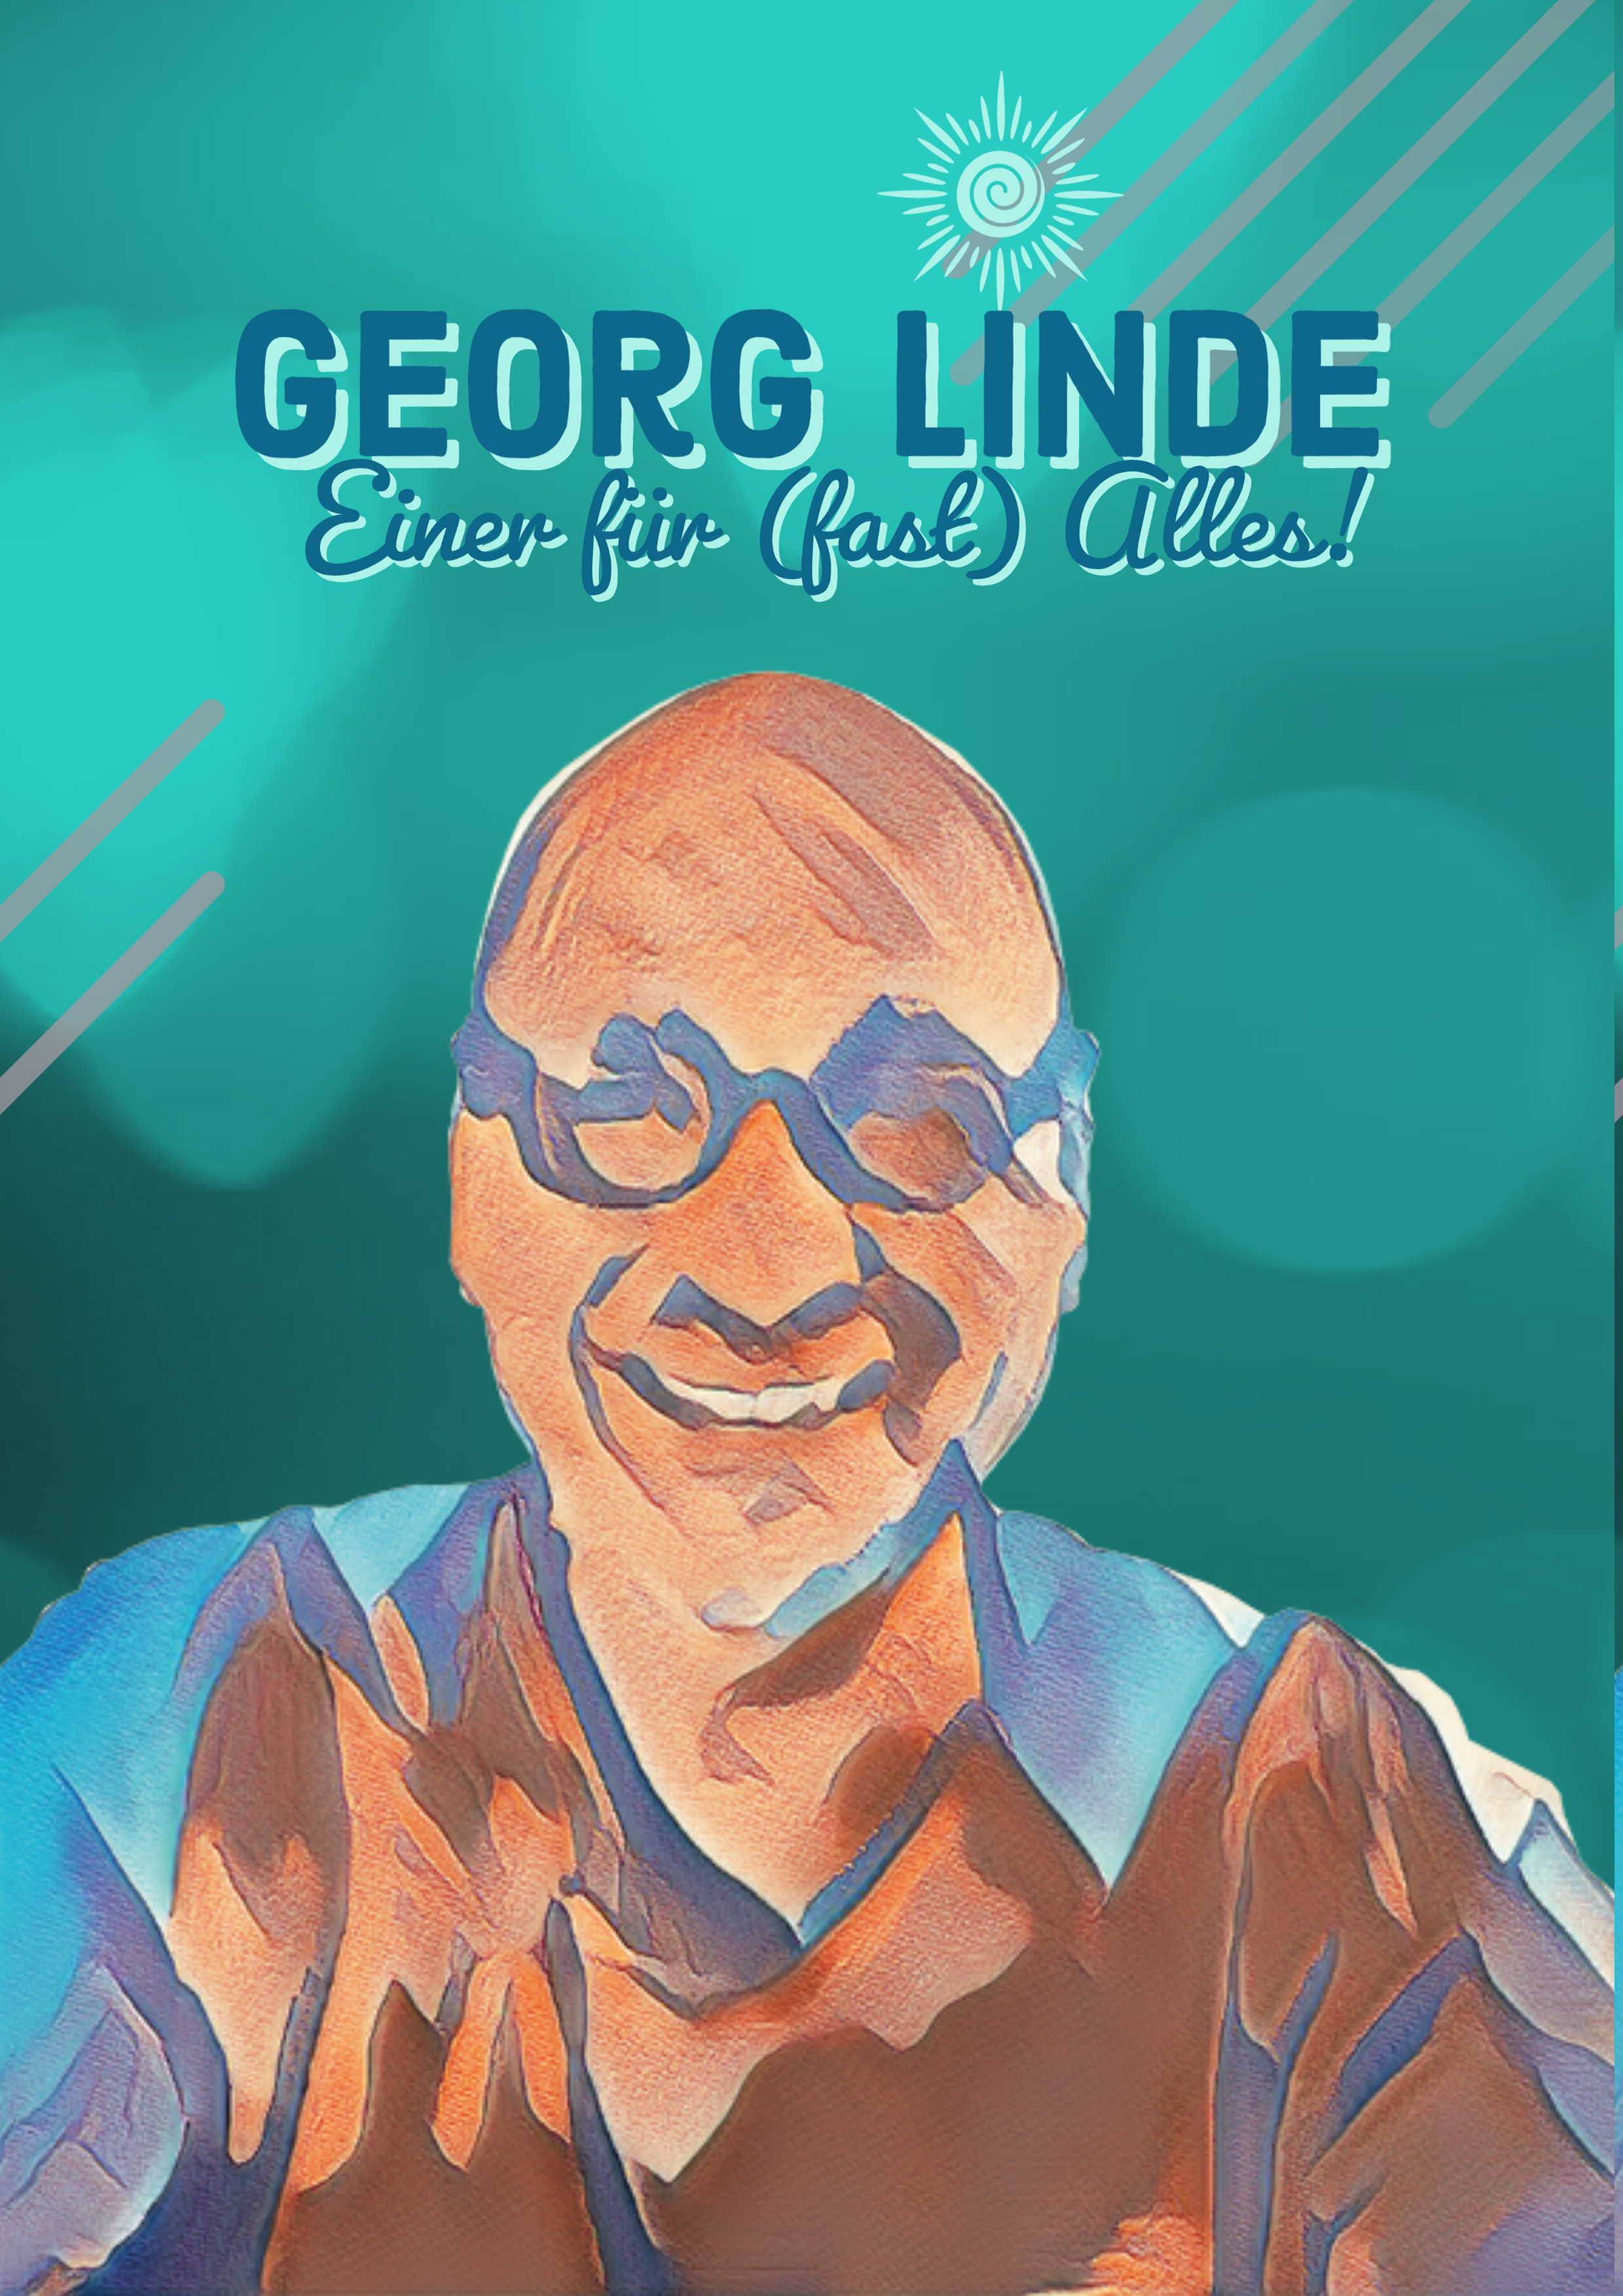 Georg Linde